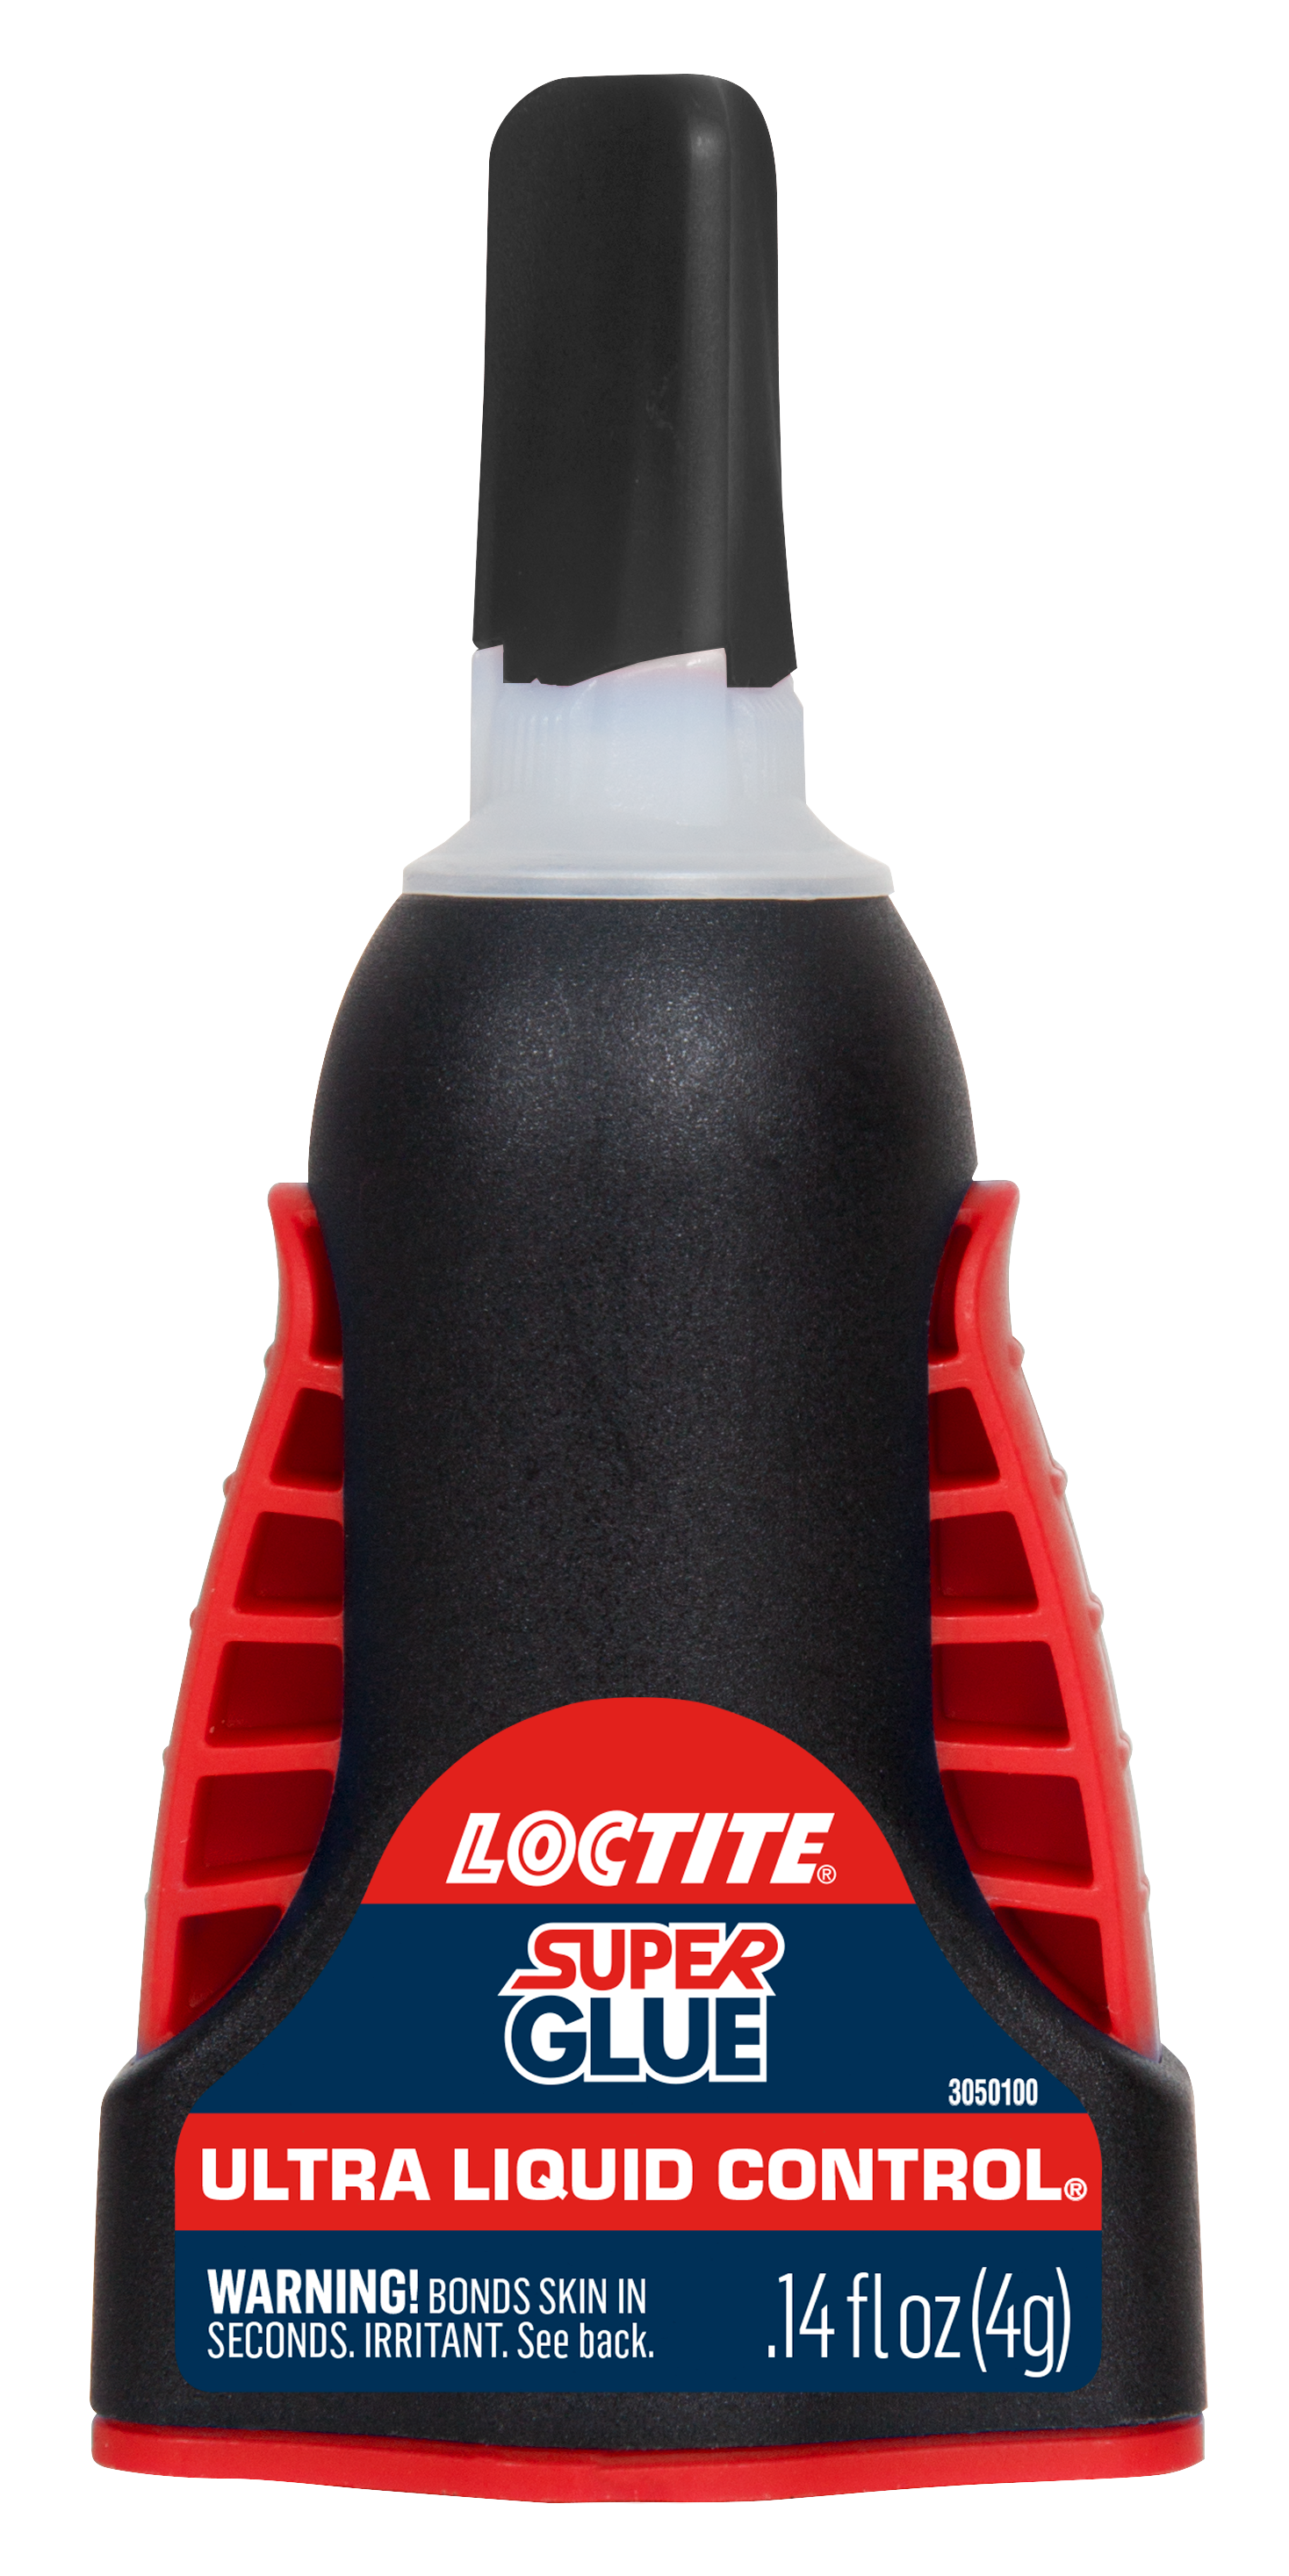 Loctite Super Glue-3 ORIGINAL nº1 líquido 3gr.